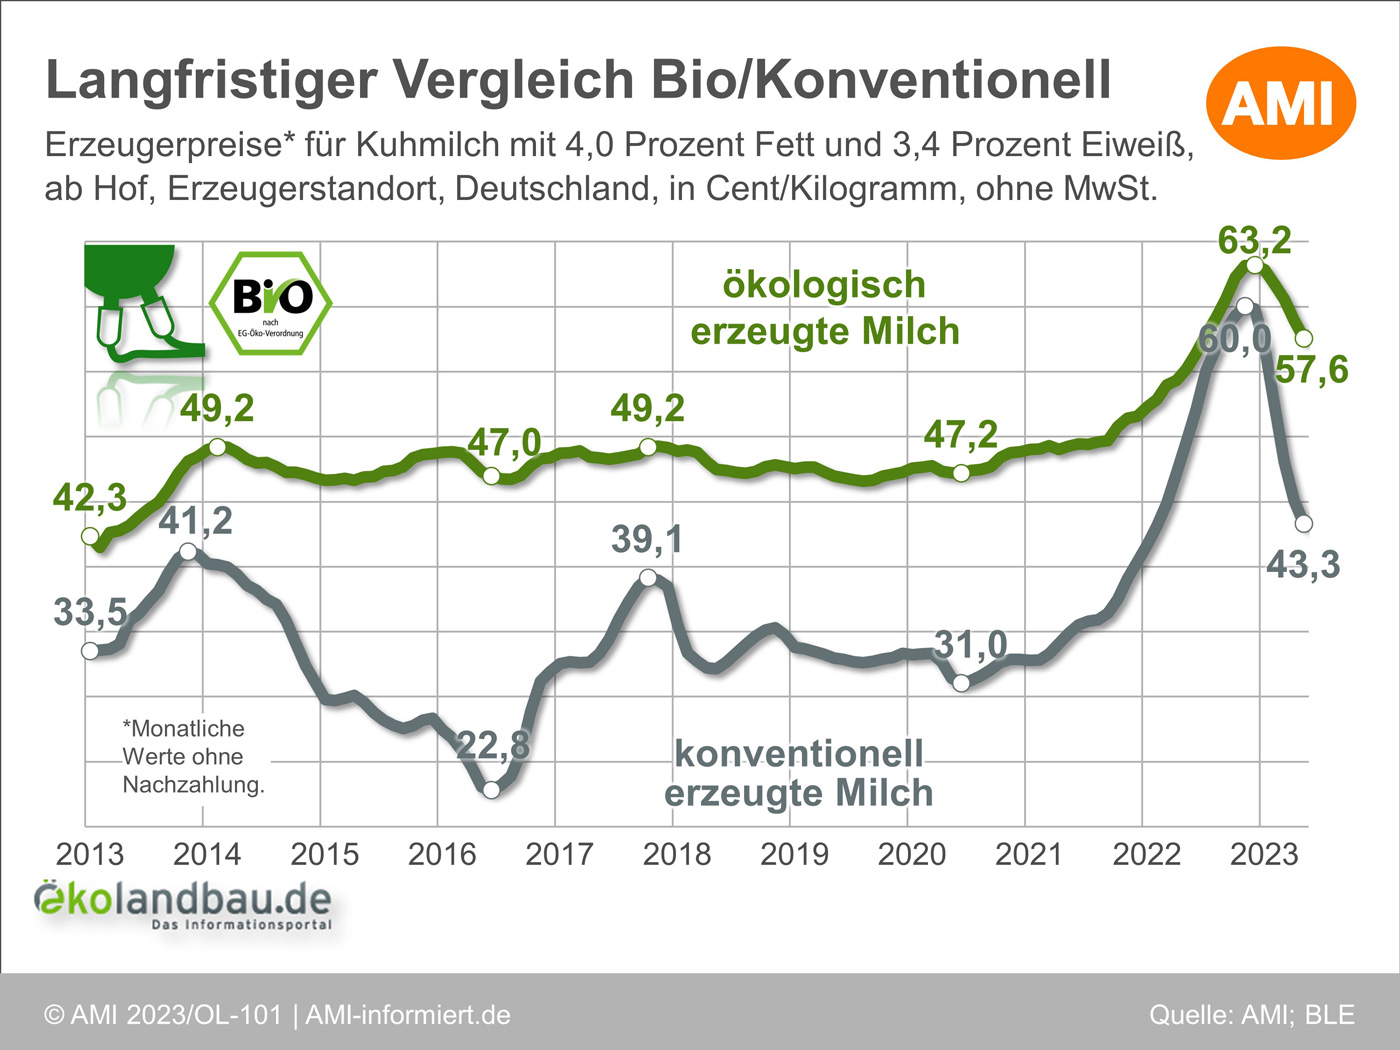 Langfristiger Vergleich der Erzeugerpreise für konventionell und ökologisch erzeugte Kuhmilch in Deutschland. Klick öffnet Bild in einer Lightbox, ESC zum schließen drücken.